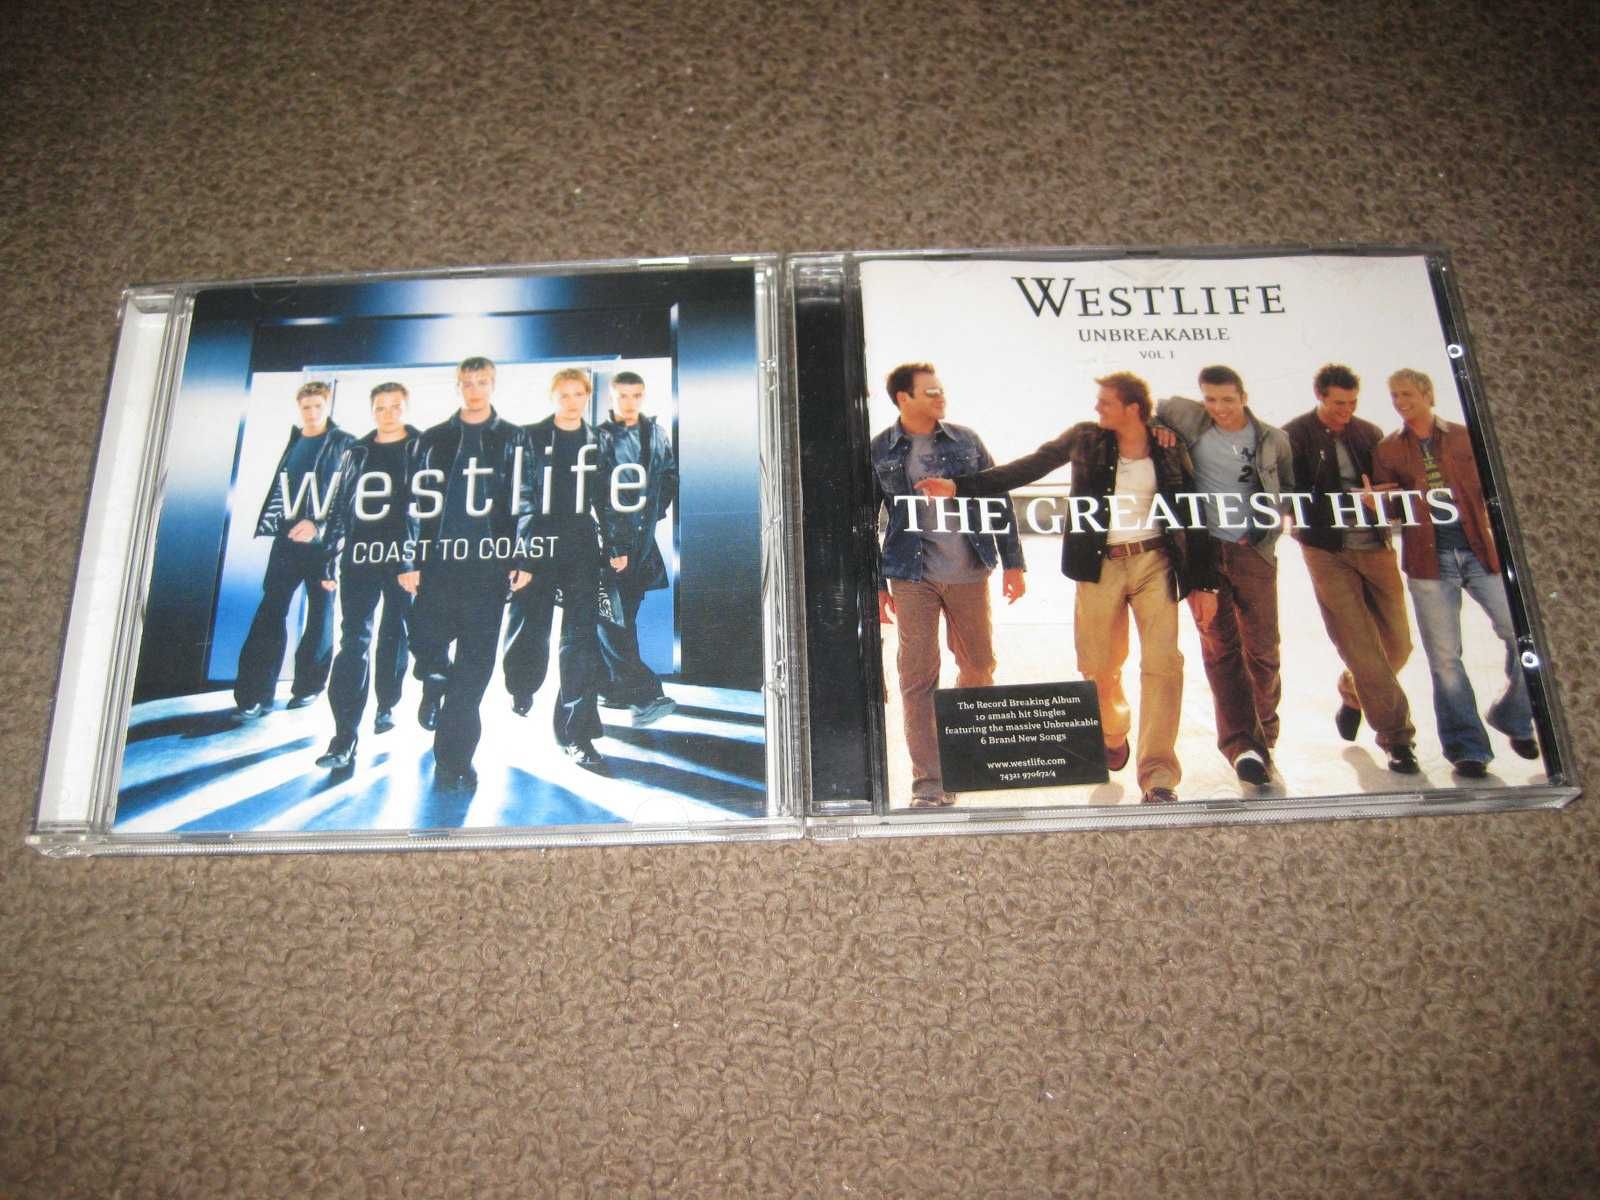 2 CDs dos "Westlife" Portes Grátis!